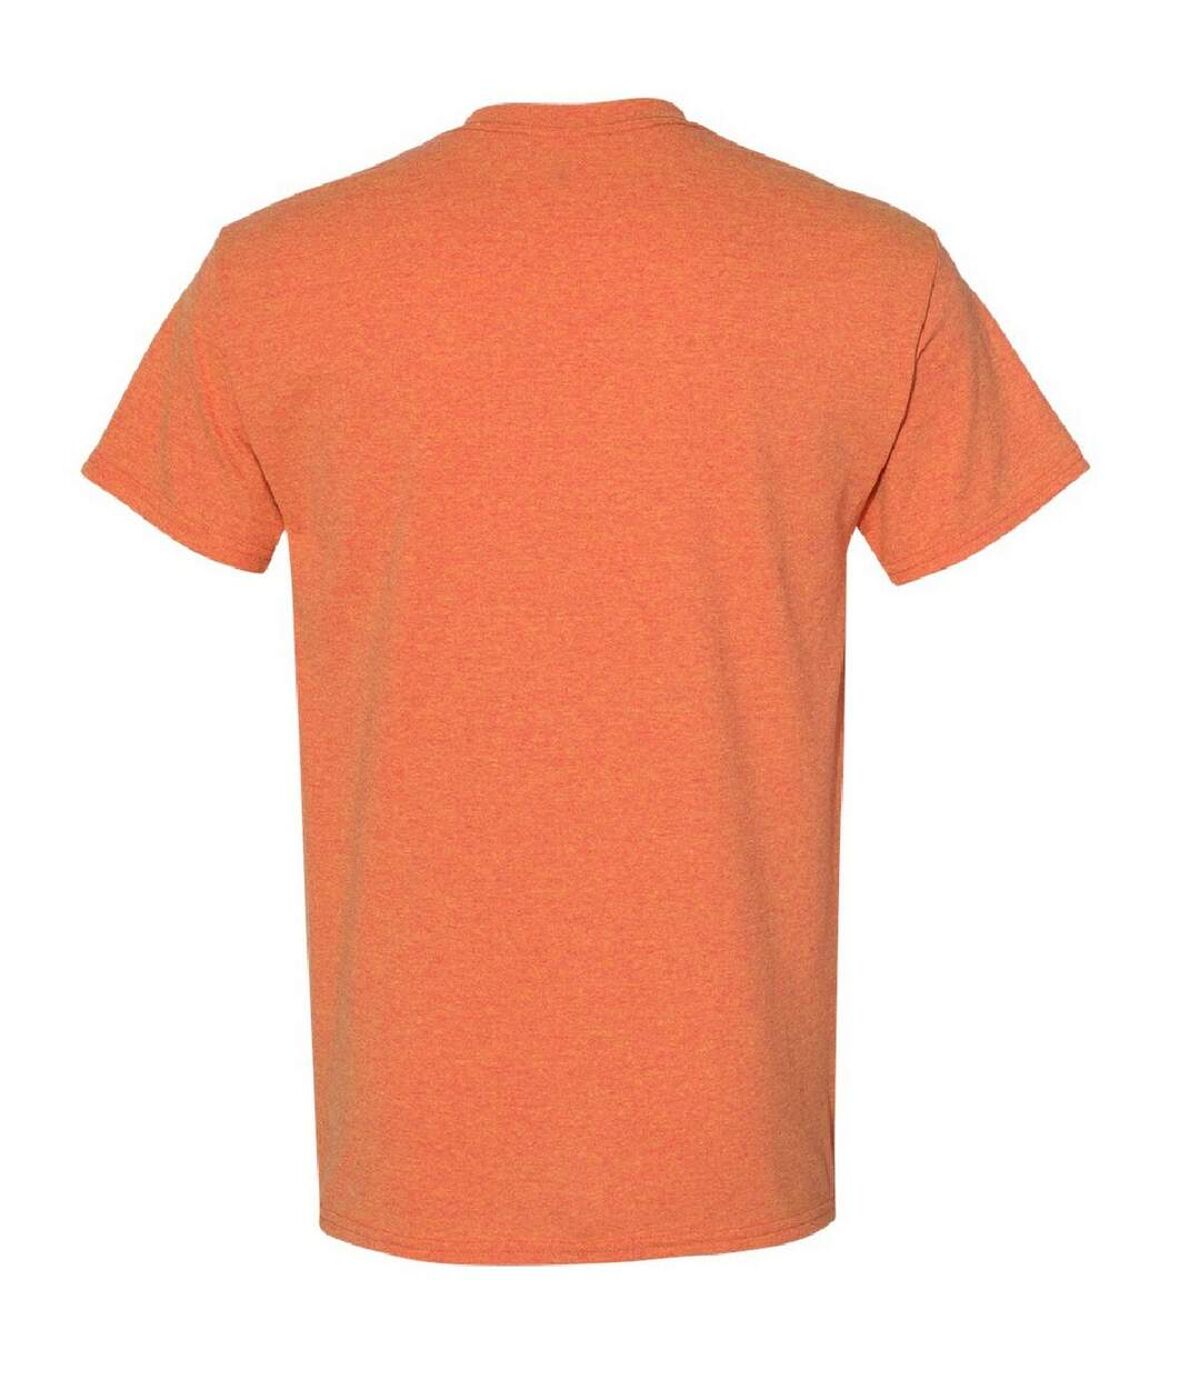 Gildan Mens Heavy Cotton Short Sleeve T-Shirt (Sunset)